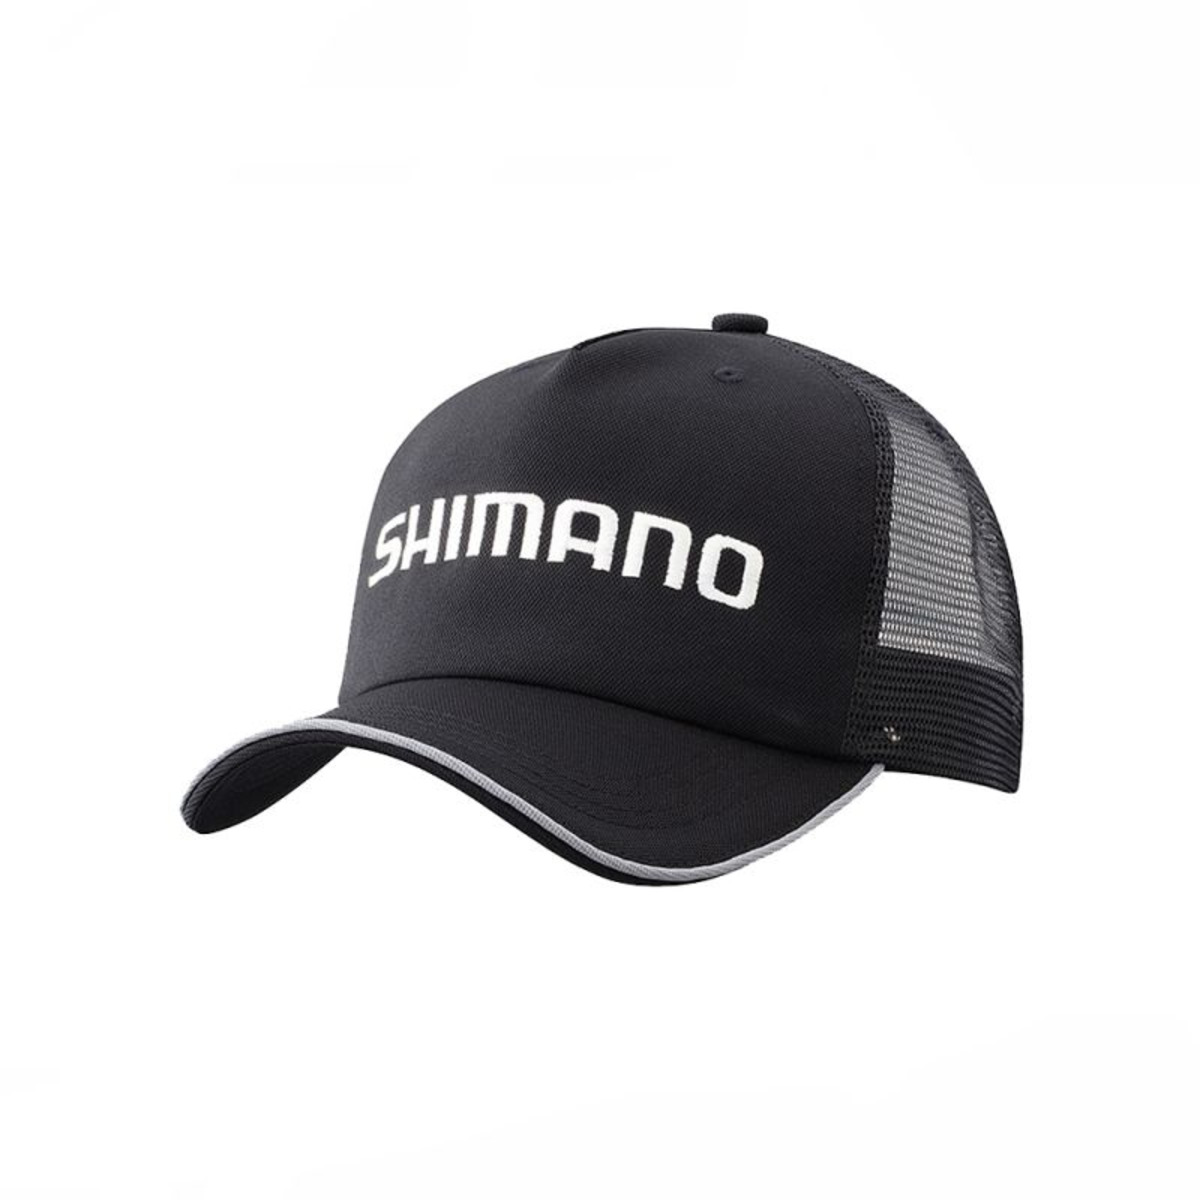 Shimano Standard Mesh Cap - Black